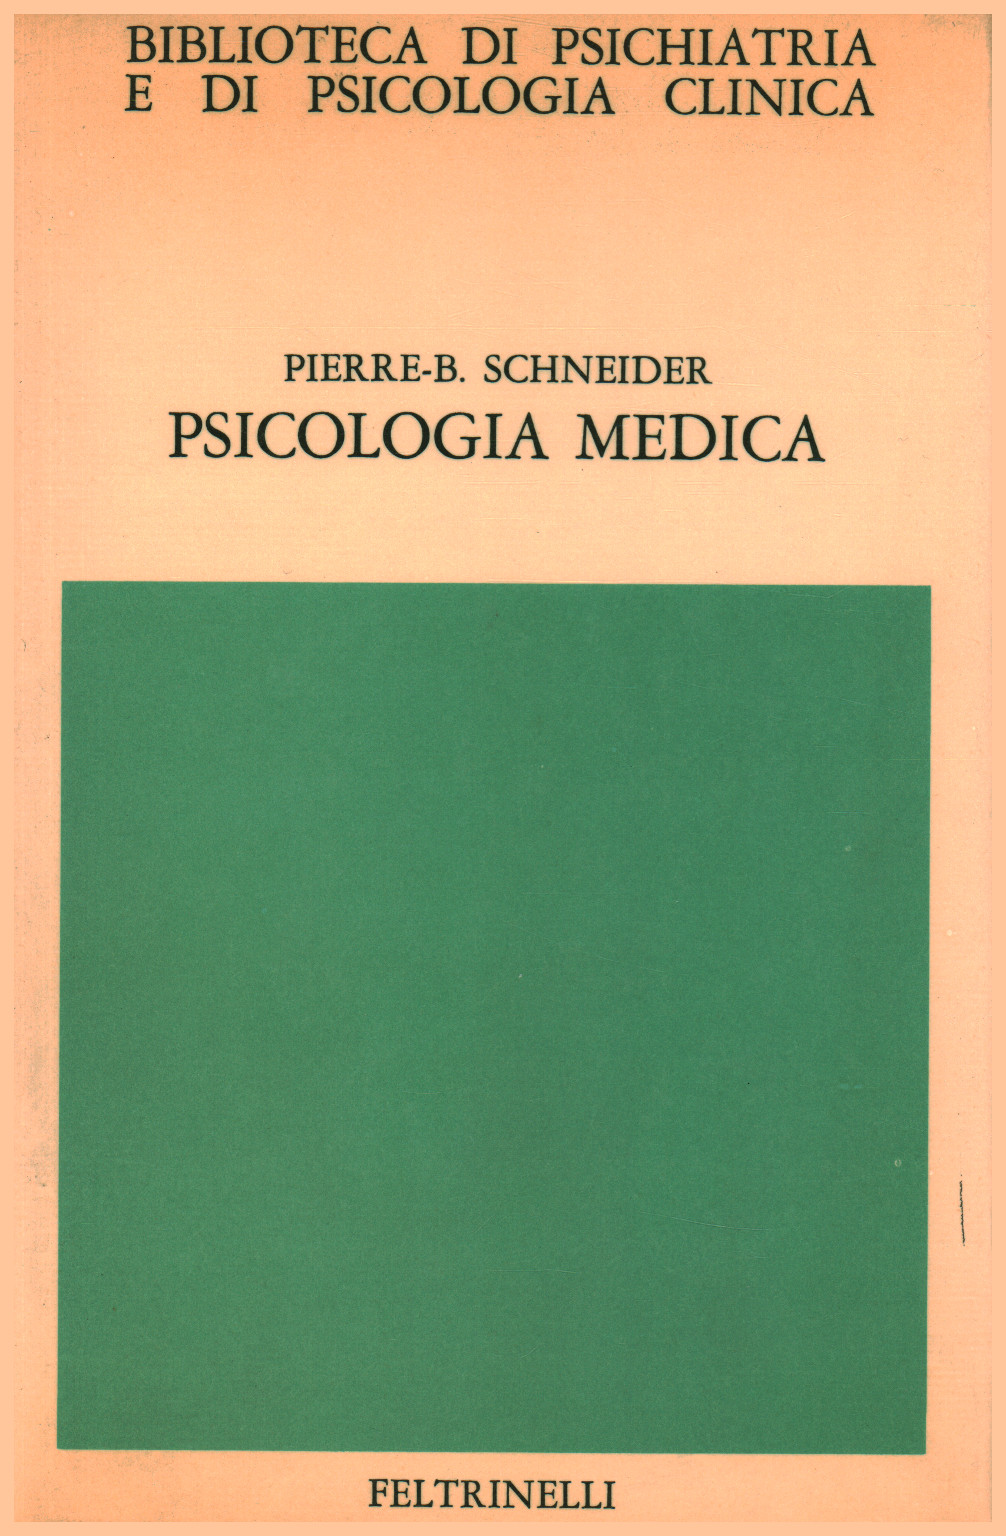 Psicologia medica, s.a.